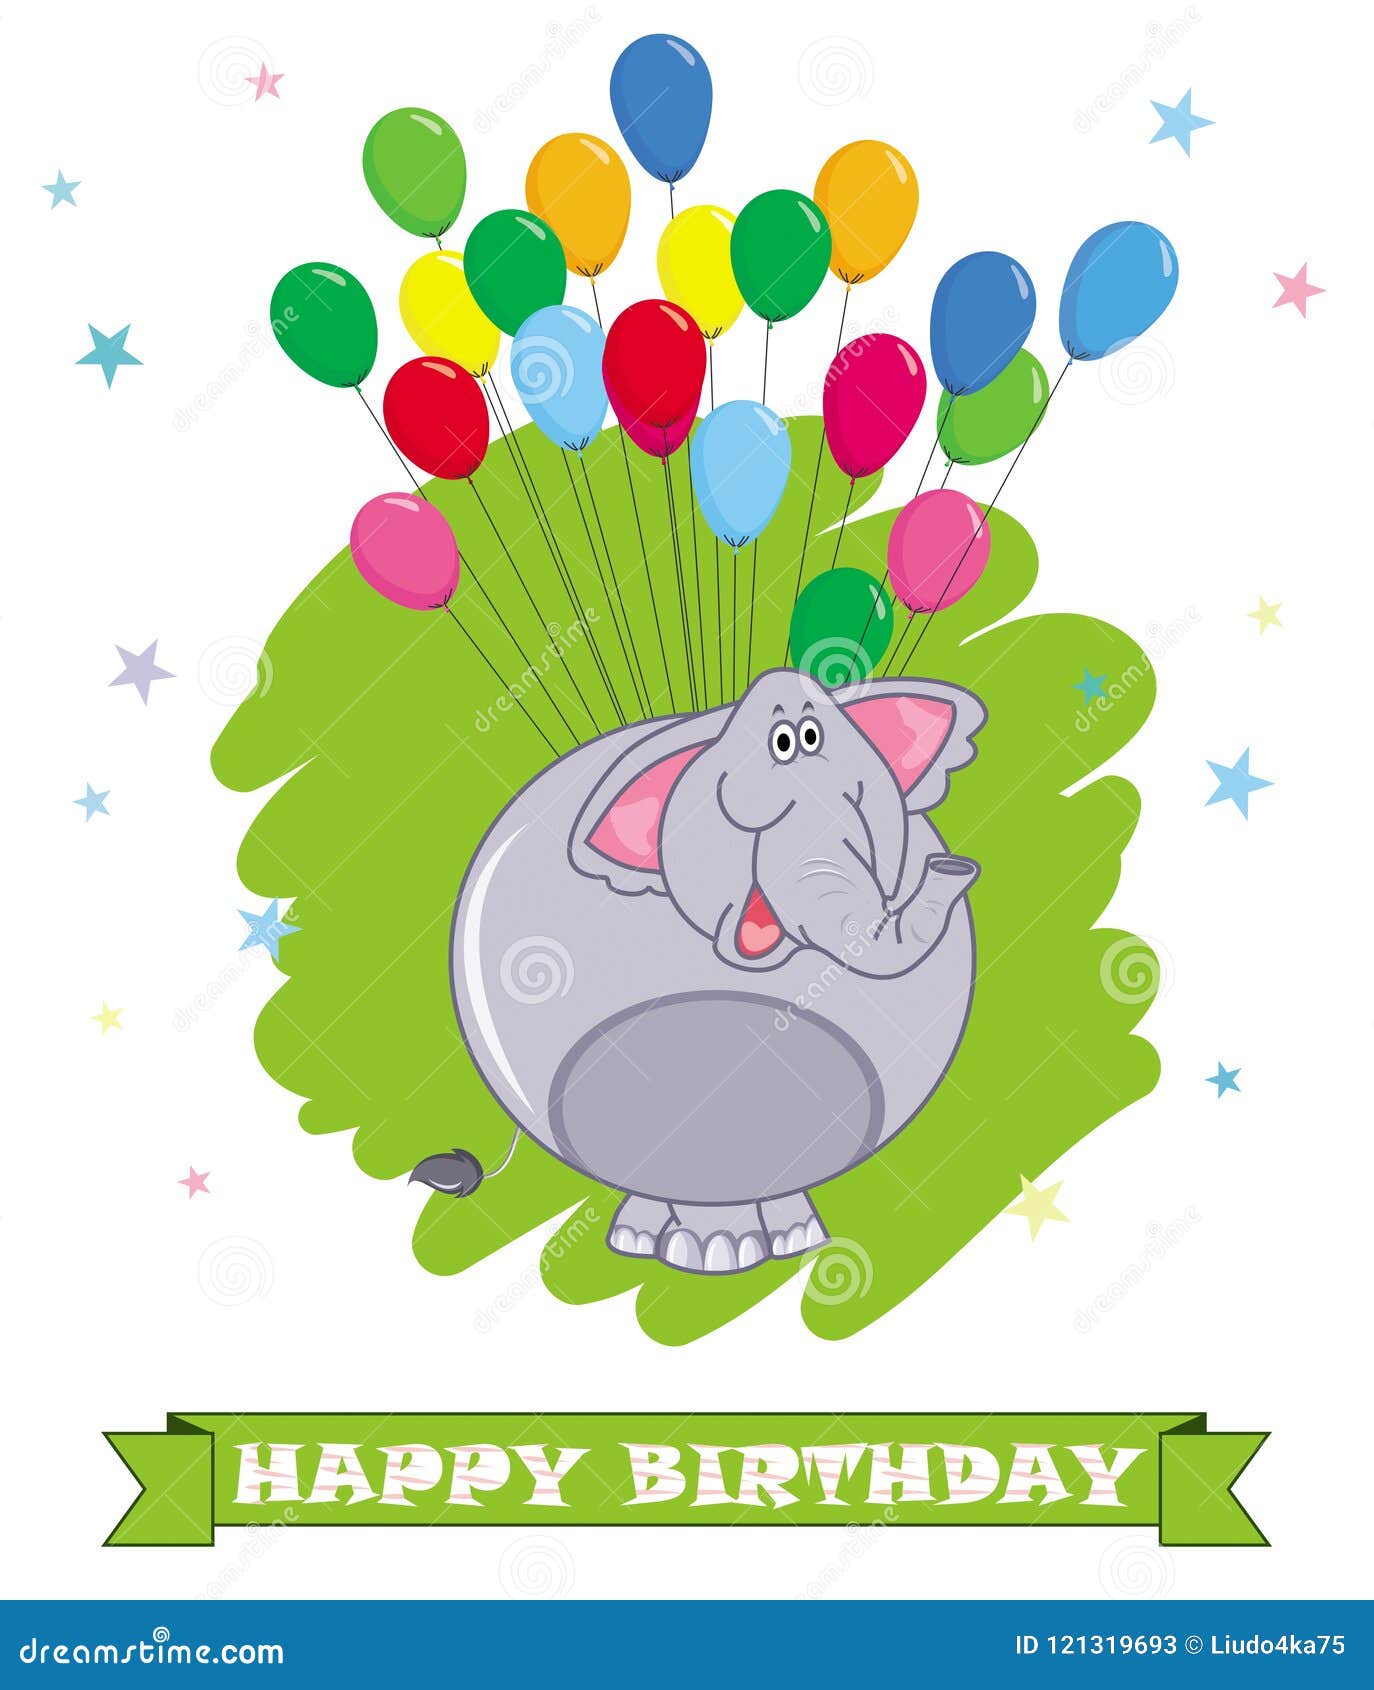 Karten Alles Gute Zum Geburtstag Lustige Abbildung Des Indischen Elefanten Buntes Ballone Backgro Stock Abbildung Illustration Von Karten Buntes 121319693